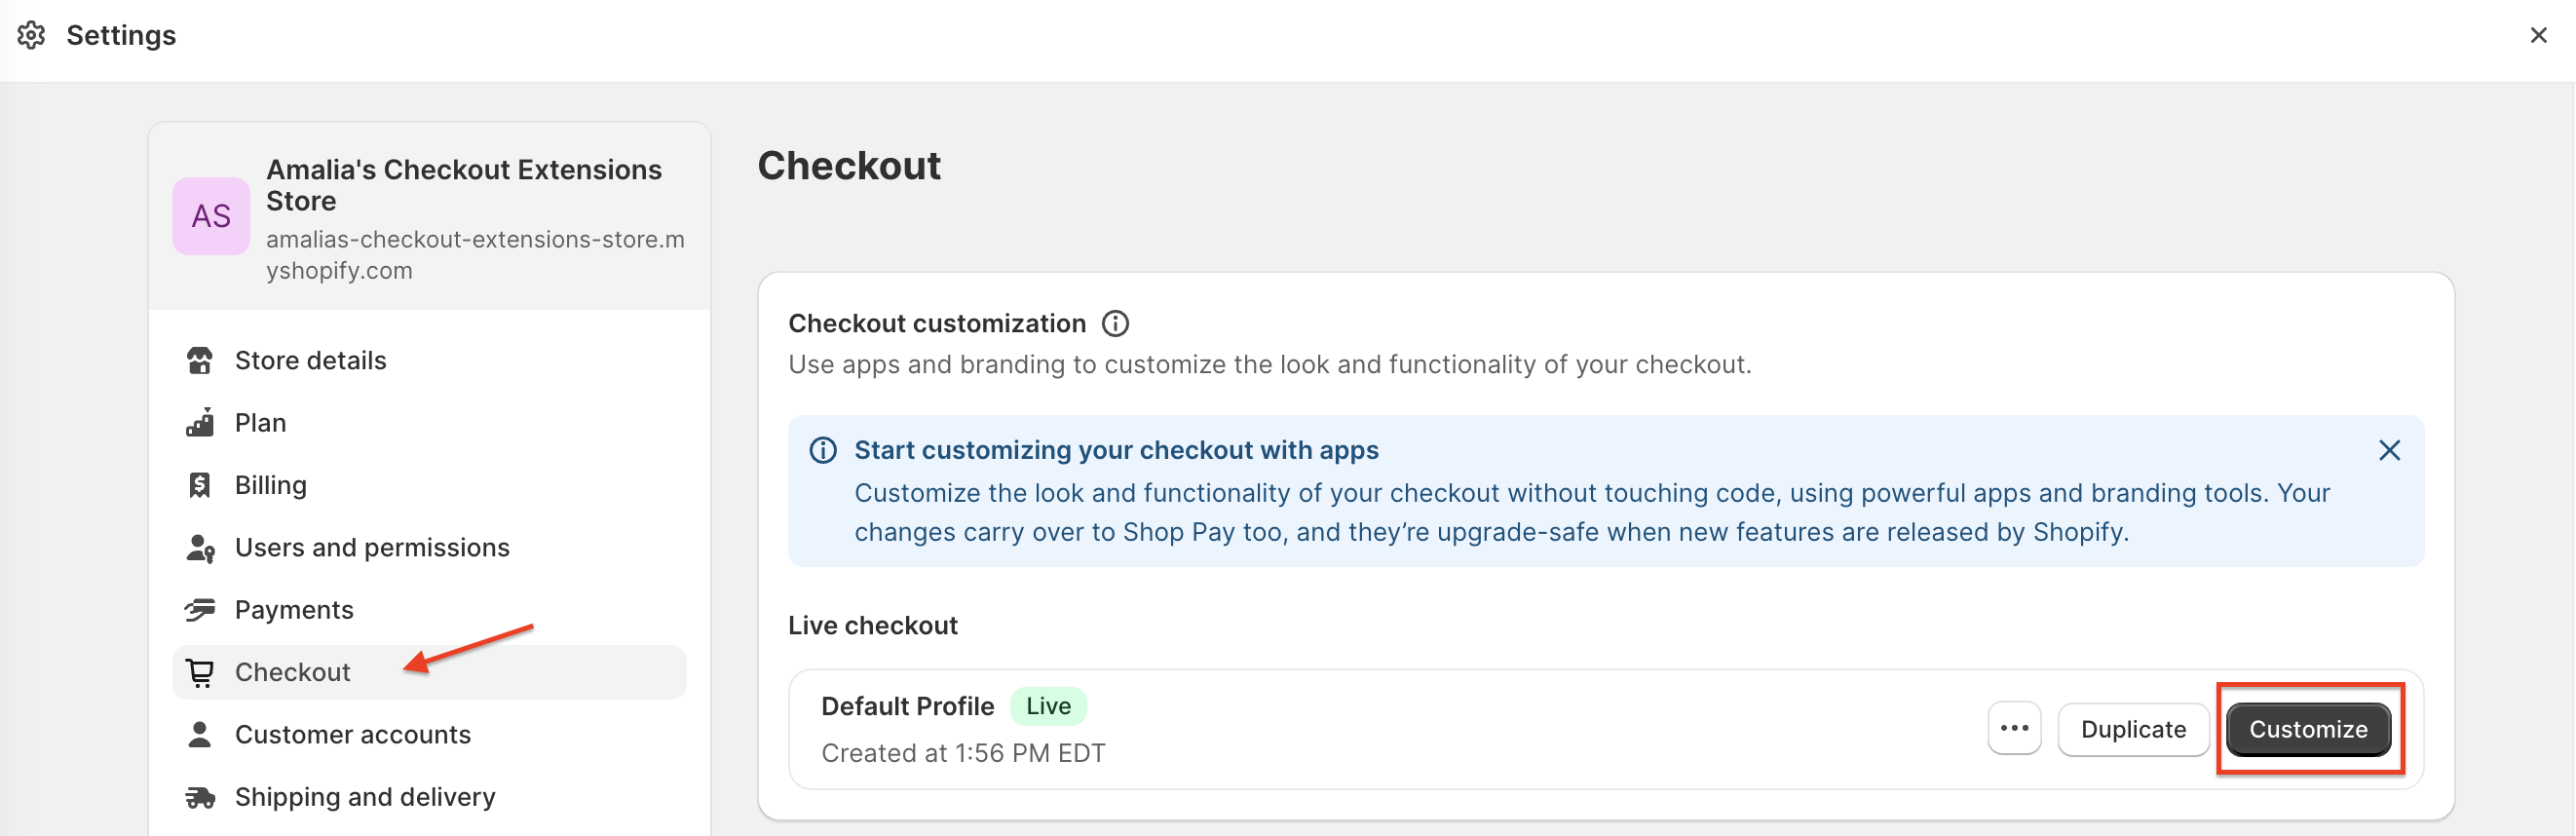 Shopify Checkout Settings